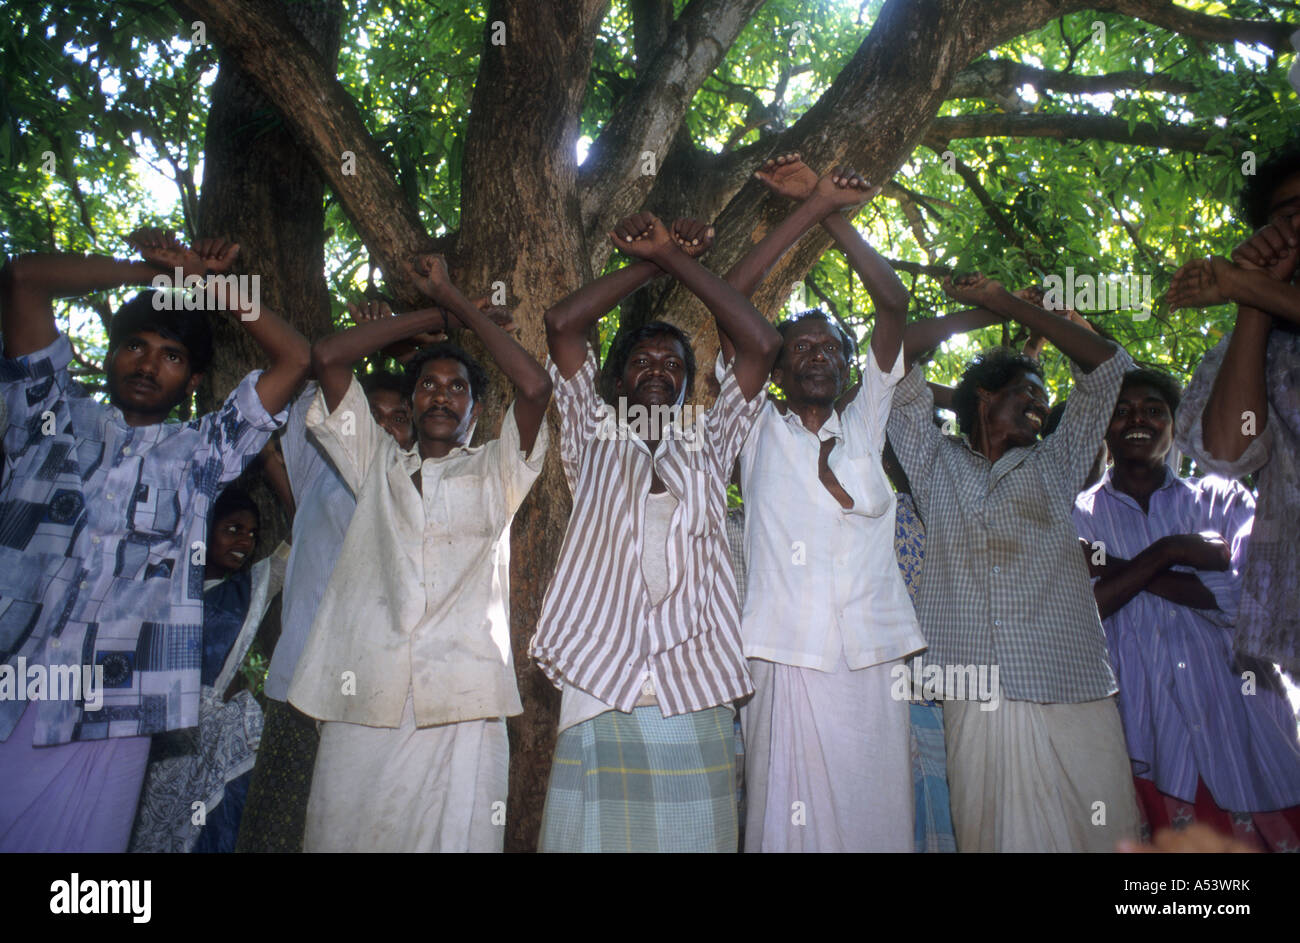 Painet ha 2226 5012 india schiavitù danza di liberazione dai lavoratori coatti palani Tamil Nadu paese nazione in via di sviluppo Foto Stock